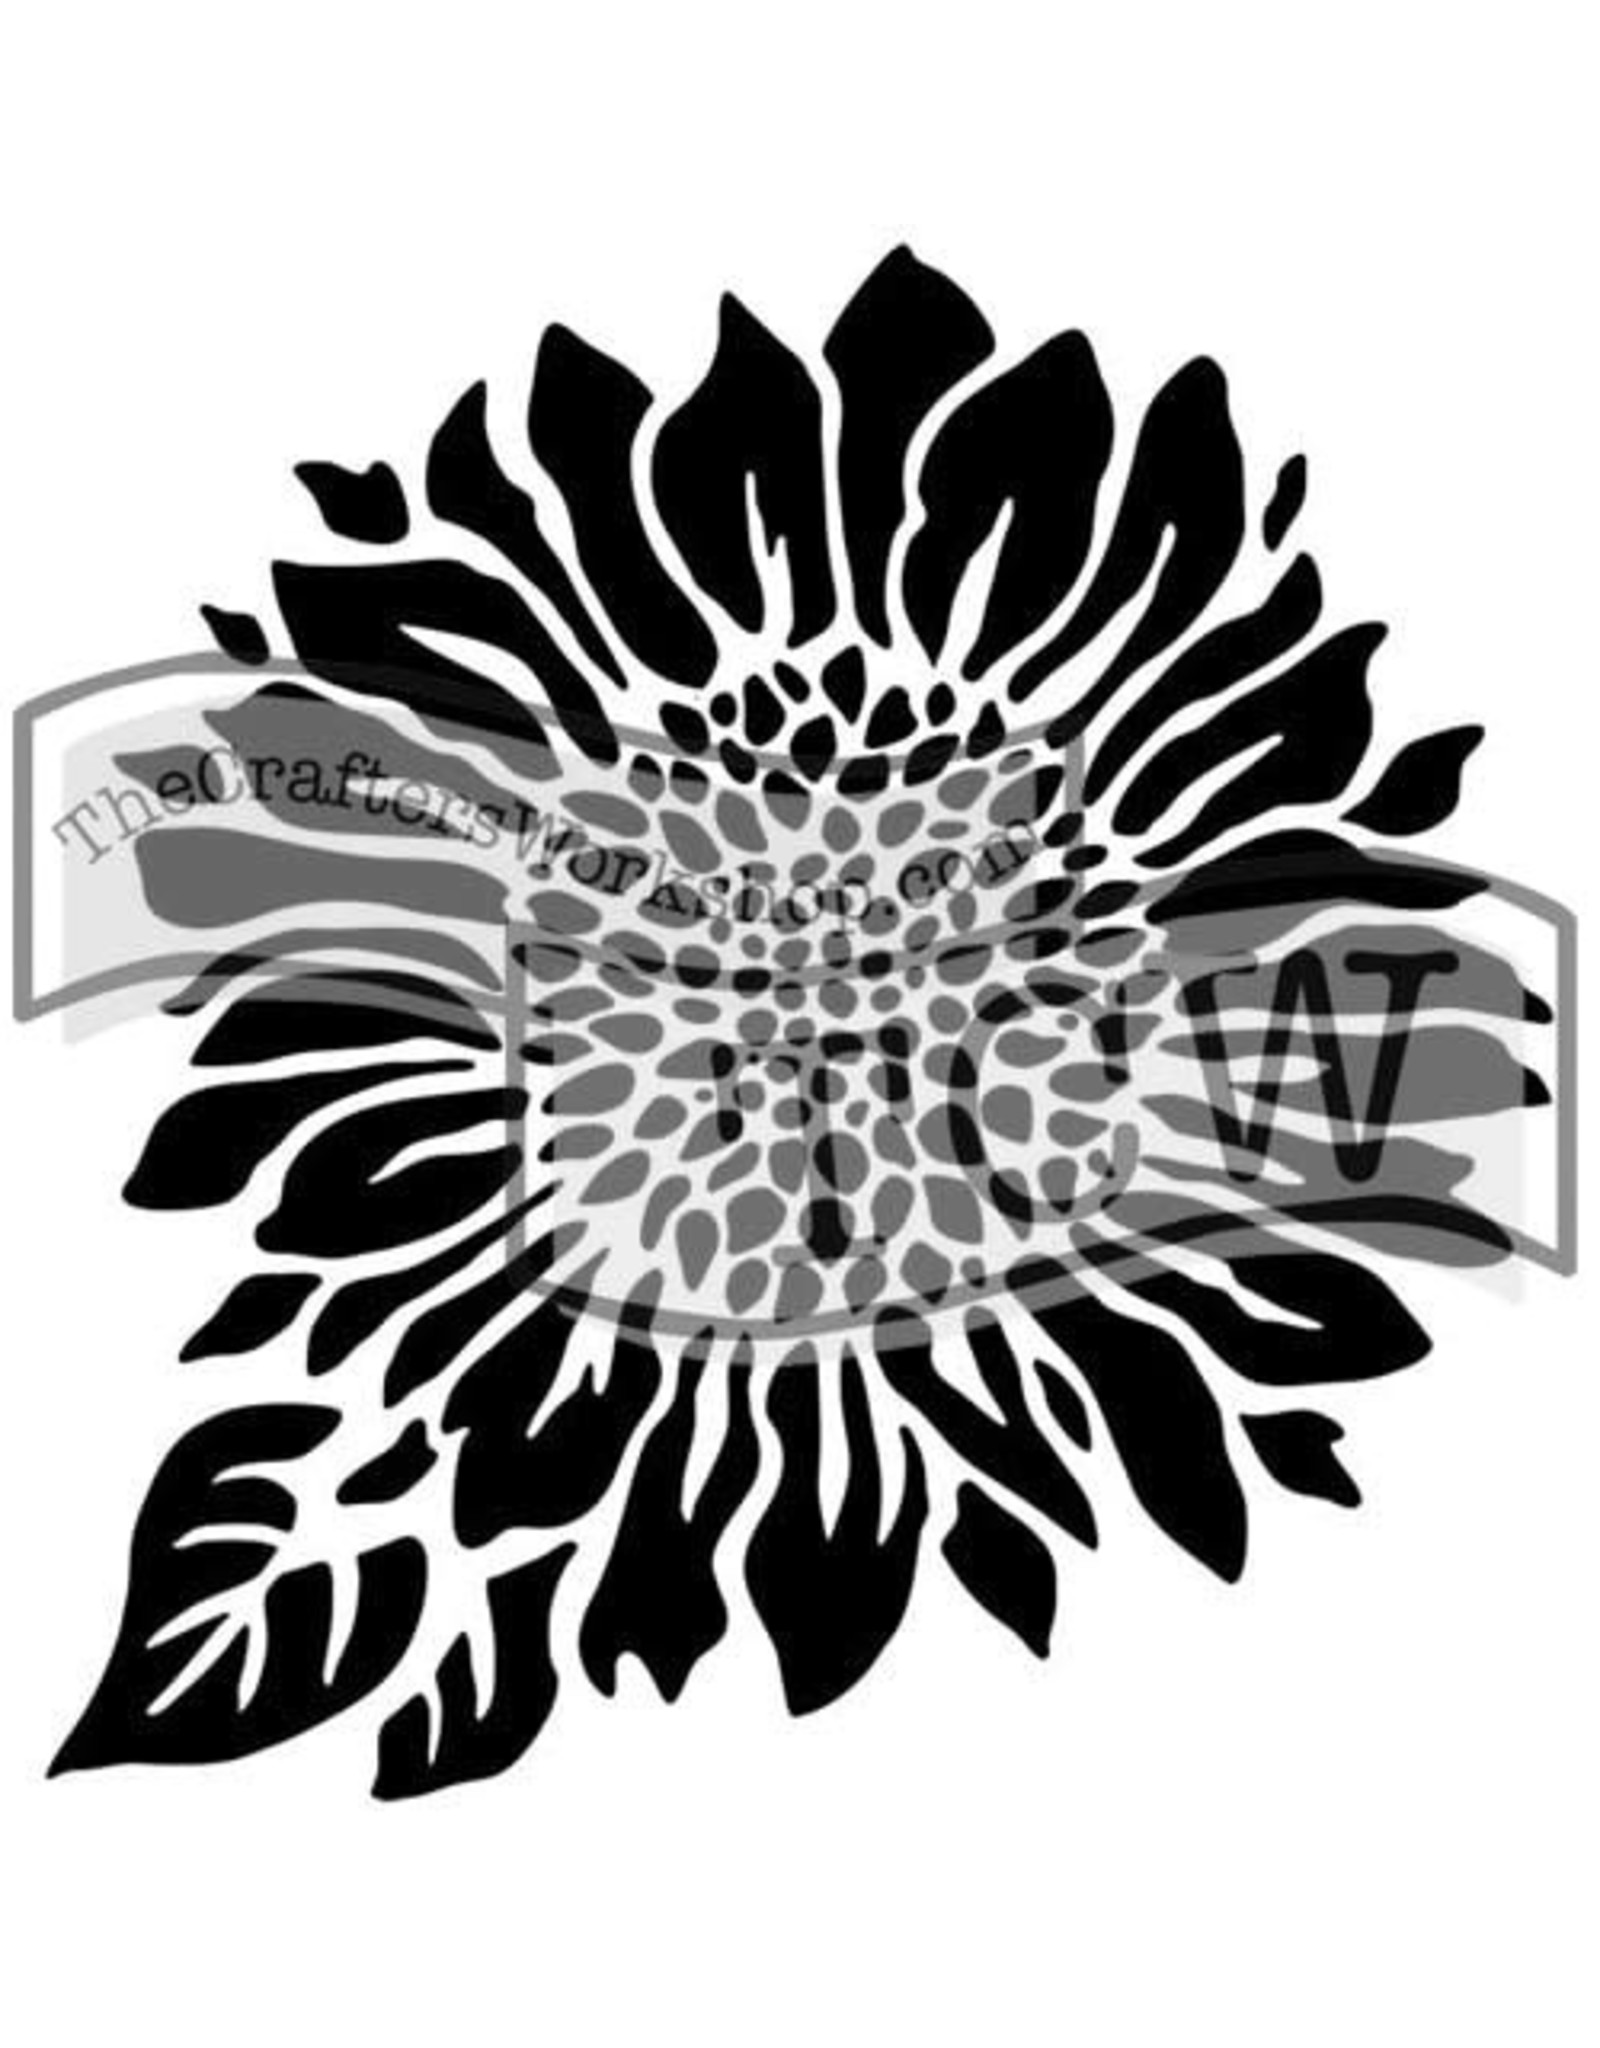 THE CRAFTERS WORKSHOP 6x6 Stencil Joyful Sunflower